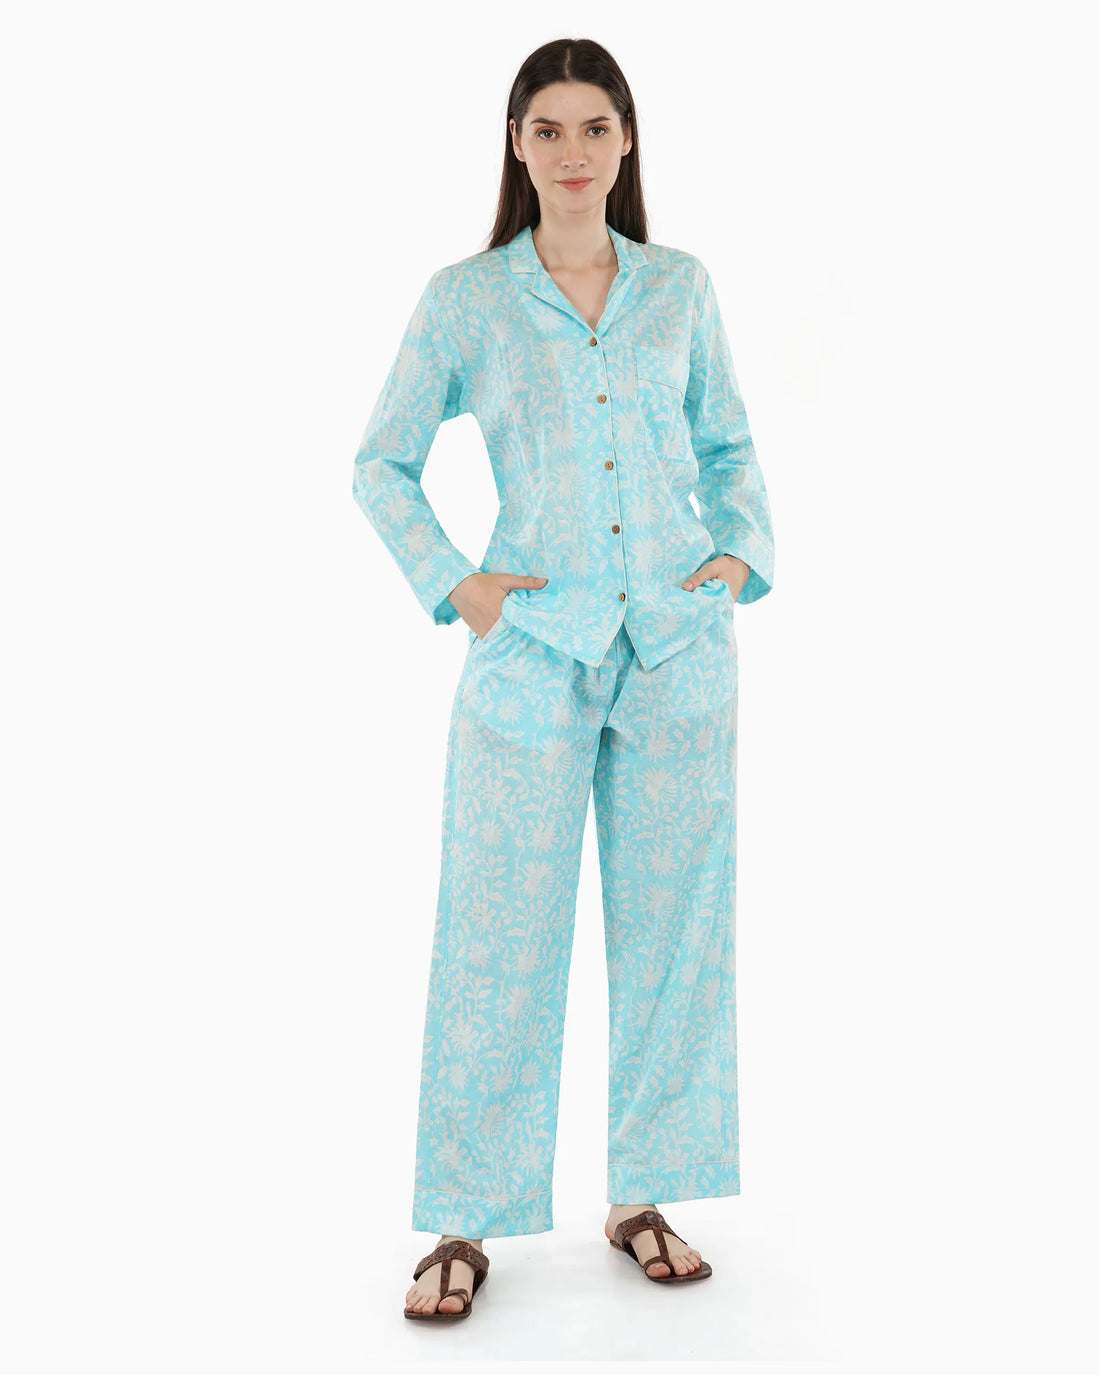 Watercolor Pajamas